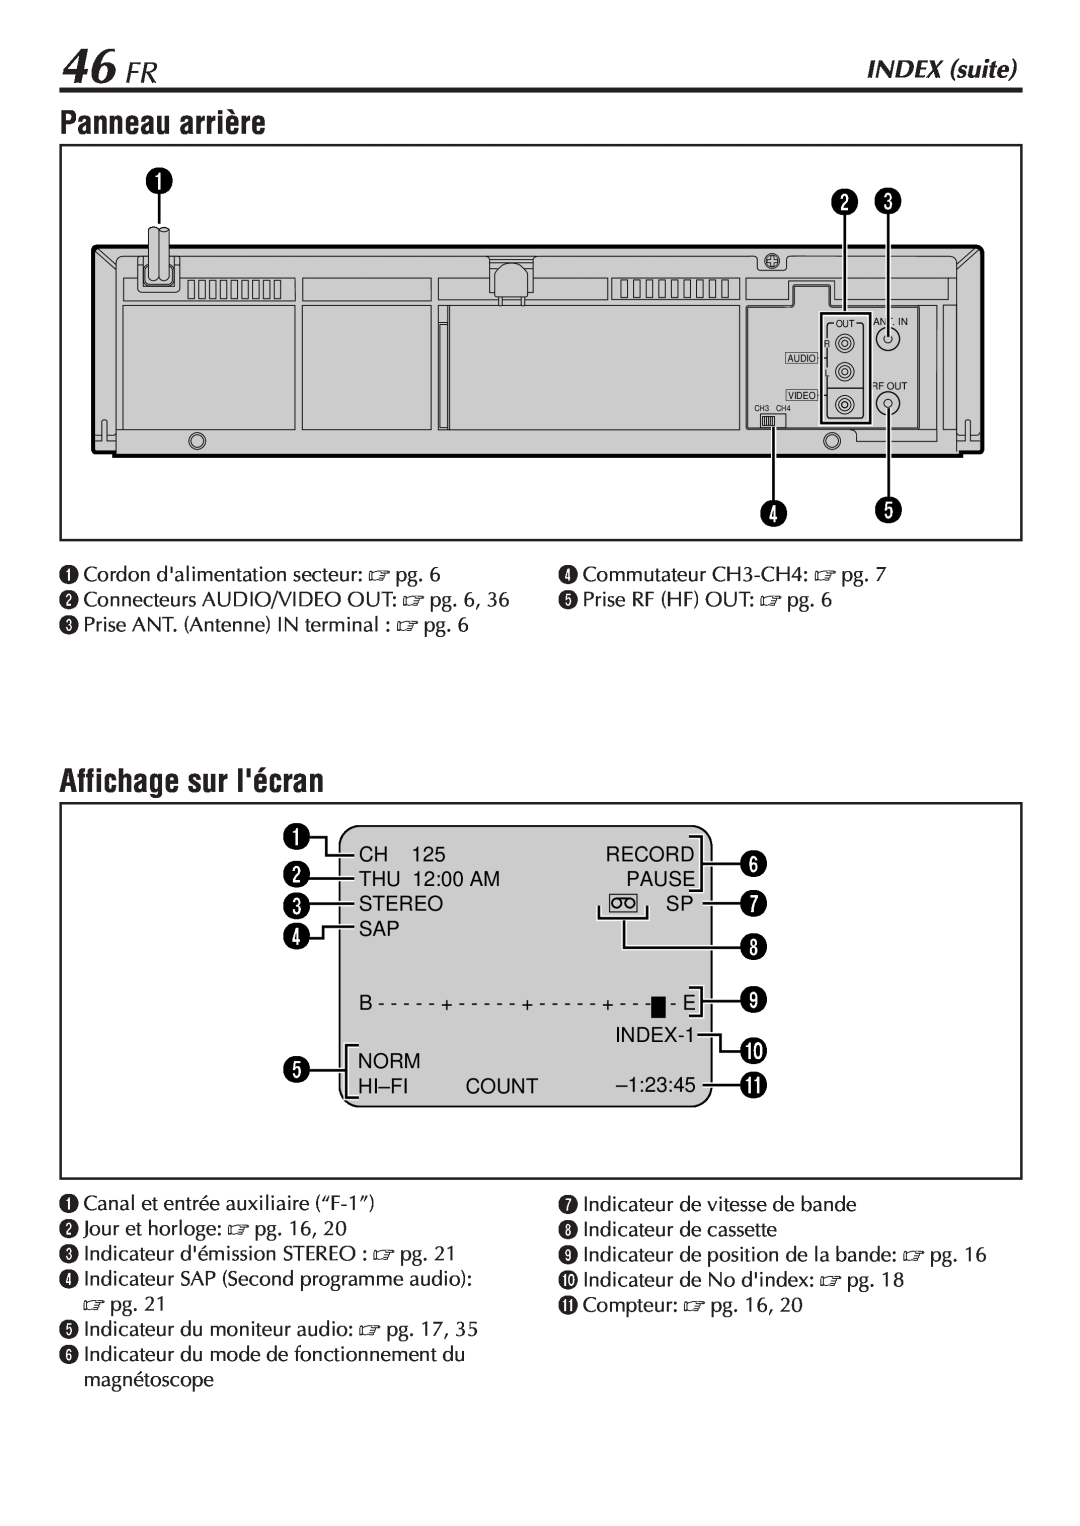 JVC HR-VP58U manual 46 FR, Panneau arrière, Affichage sur lécran, INDEX suite 